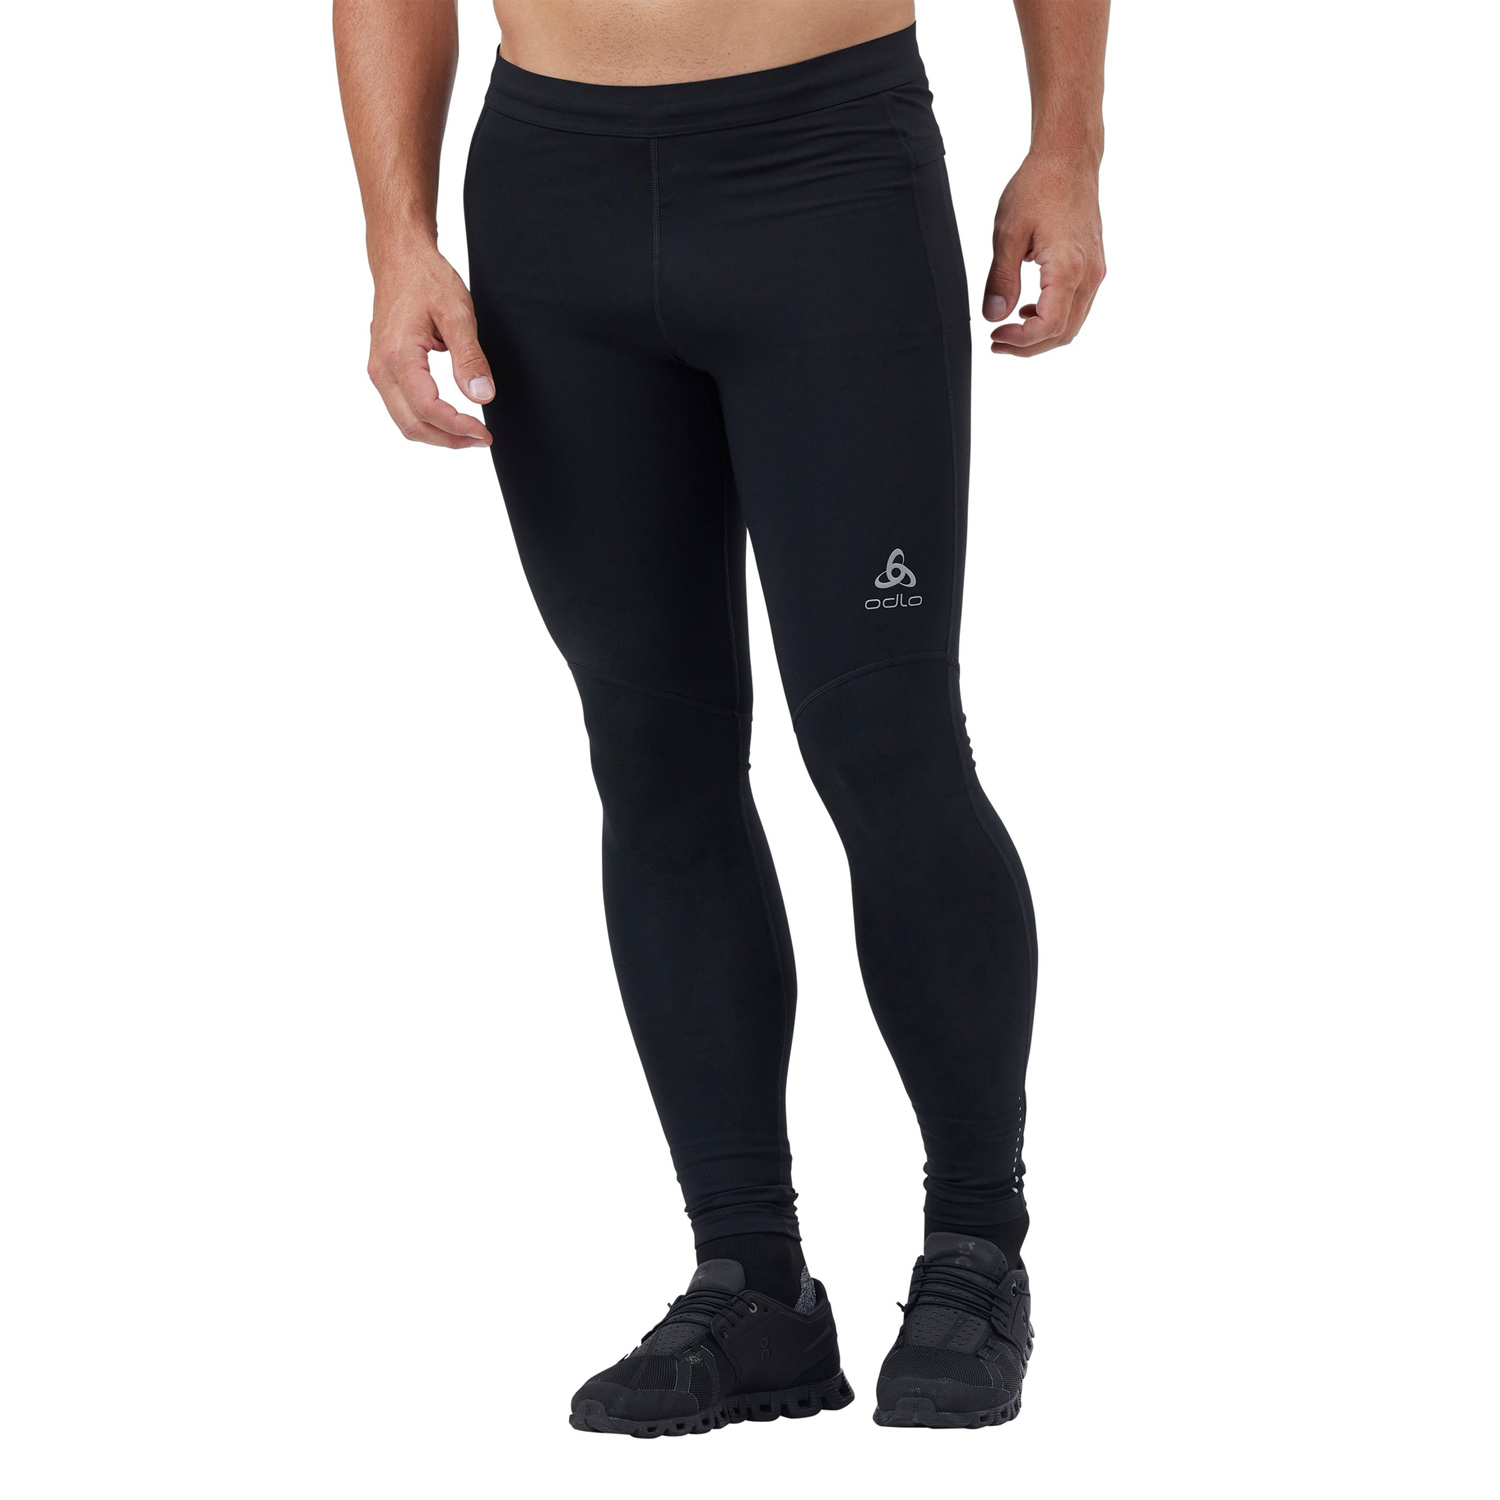 ATHLIO - Leggings deportivos de compresión para hombre, mallas para correr  y hacer ejercicio, con tecnología de secado rápido, paquete con 2 o 3